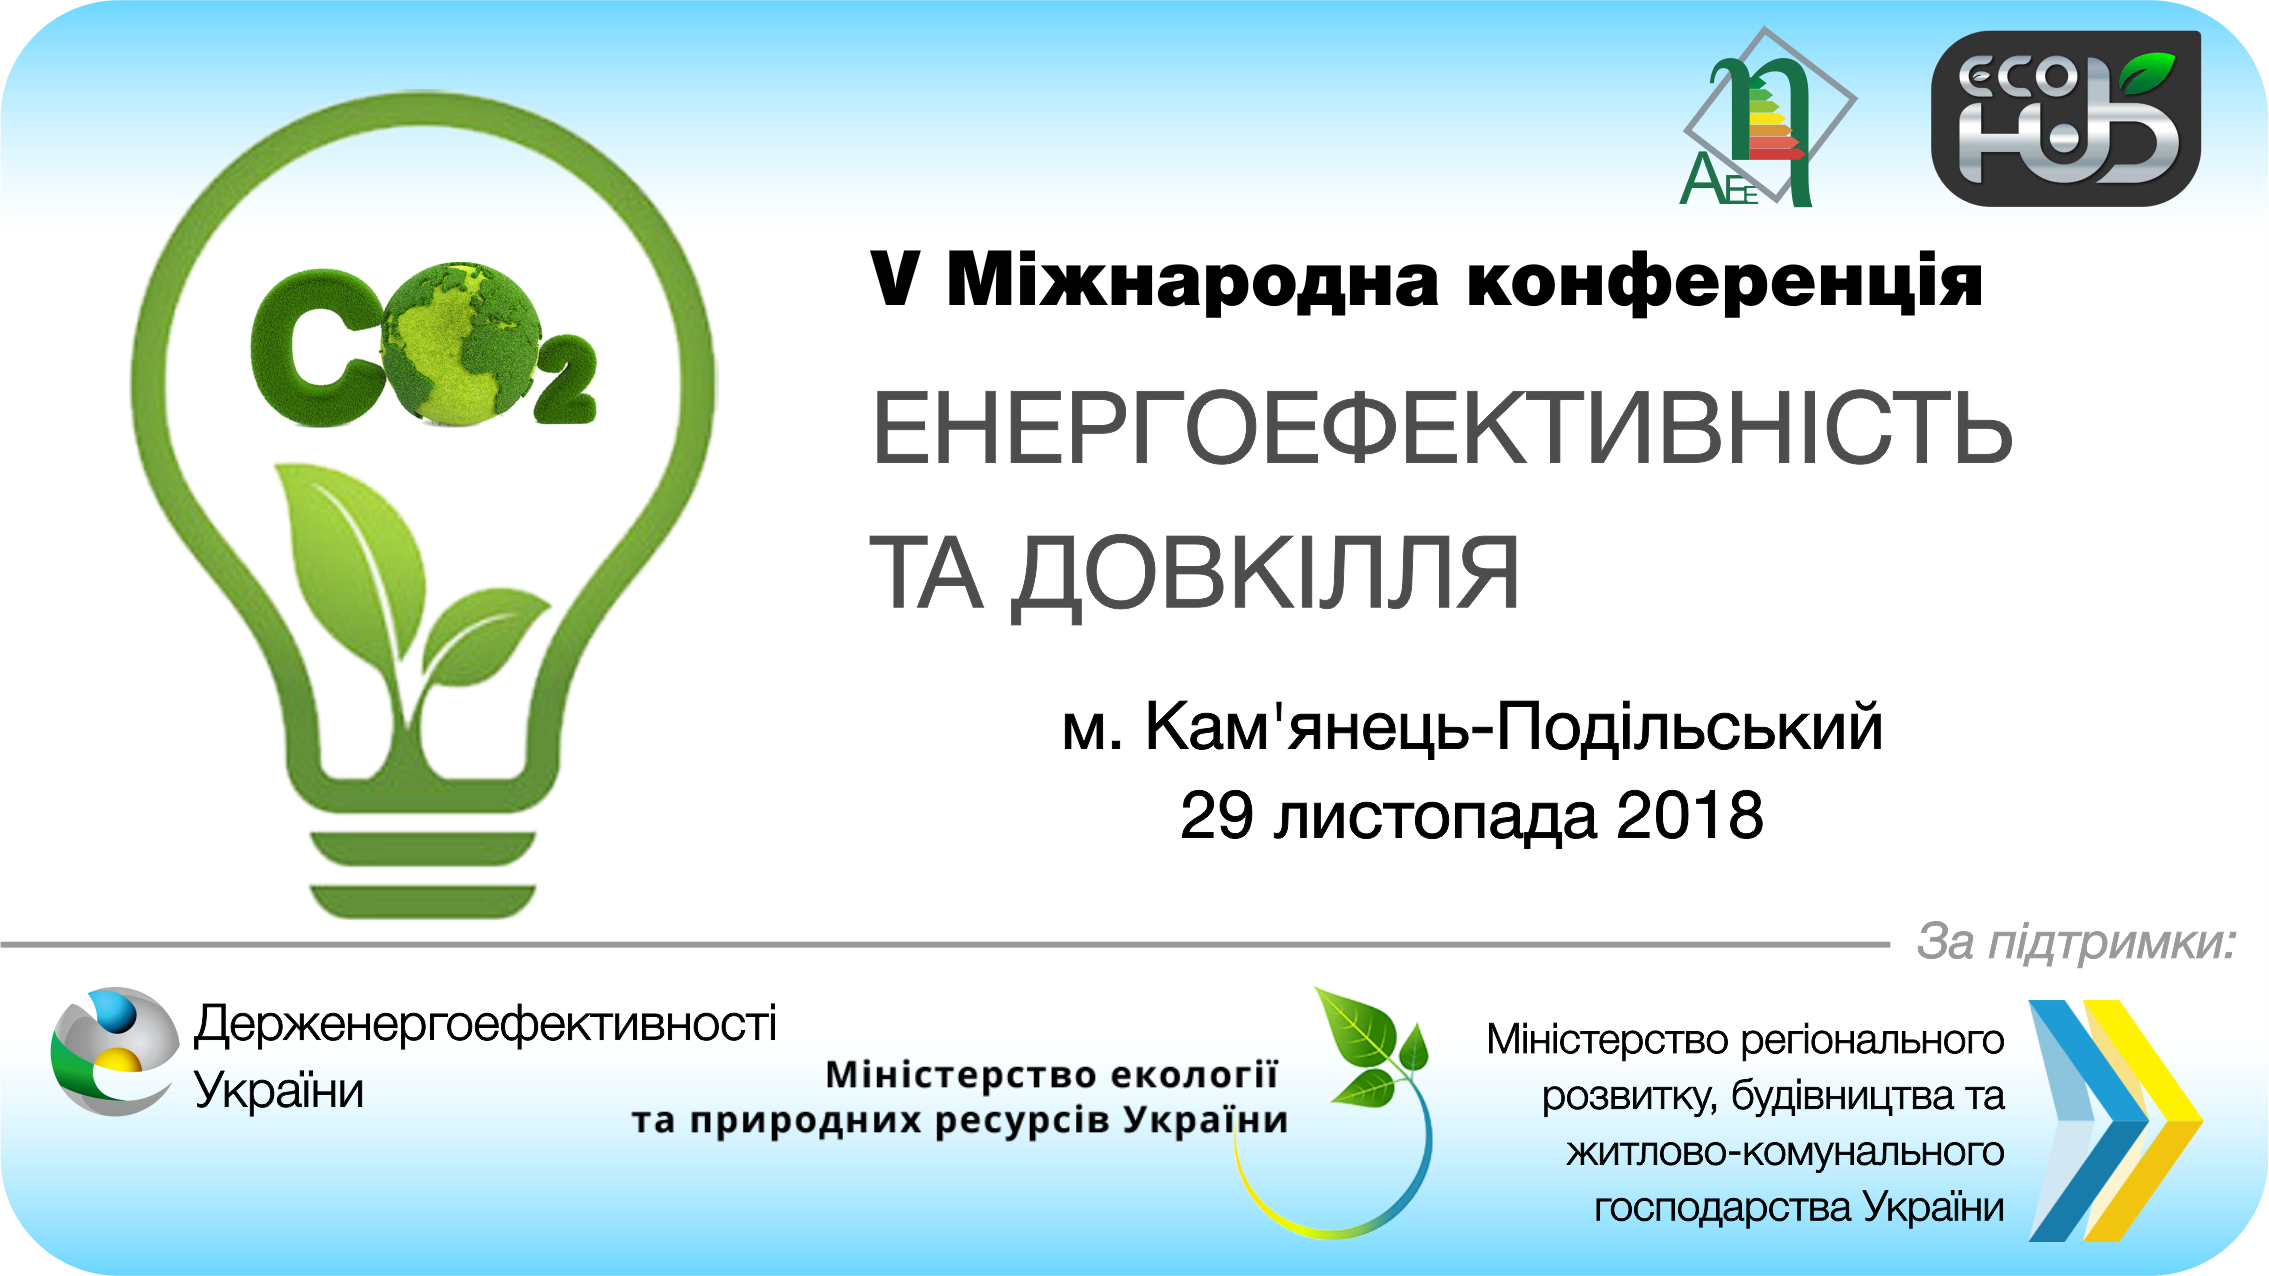 V Міжнародна конференція “Енергоефективність та Довкілля 2018″